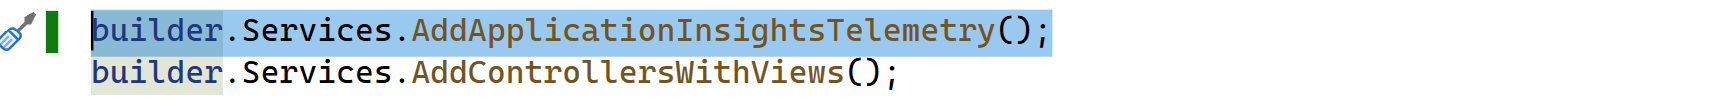 Schermopname van een codevenster in Visual Studio met het voorgaande codefragment gemarkeerd.